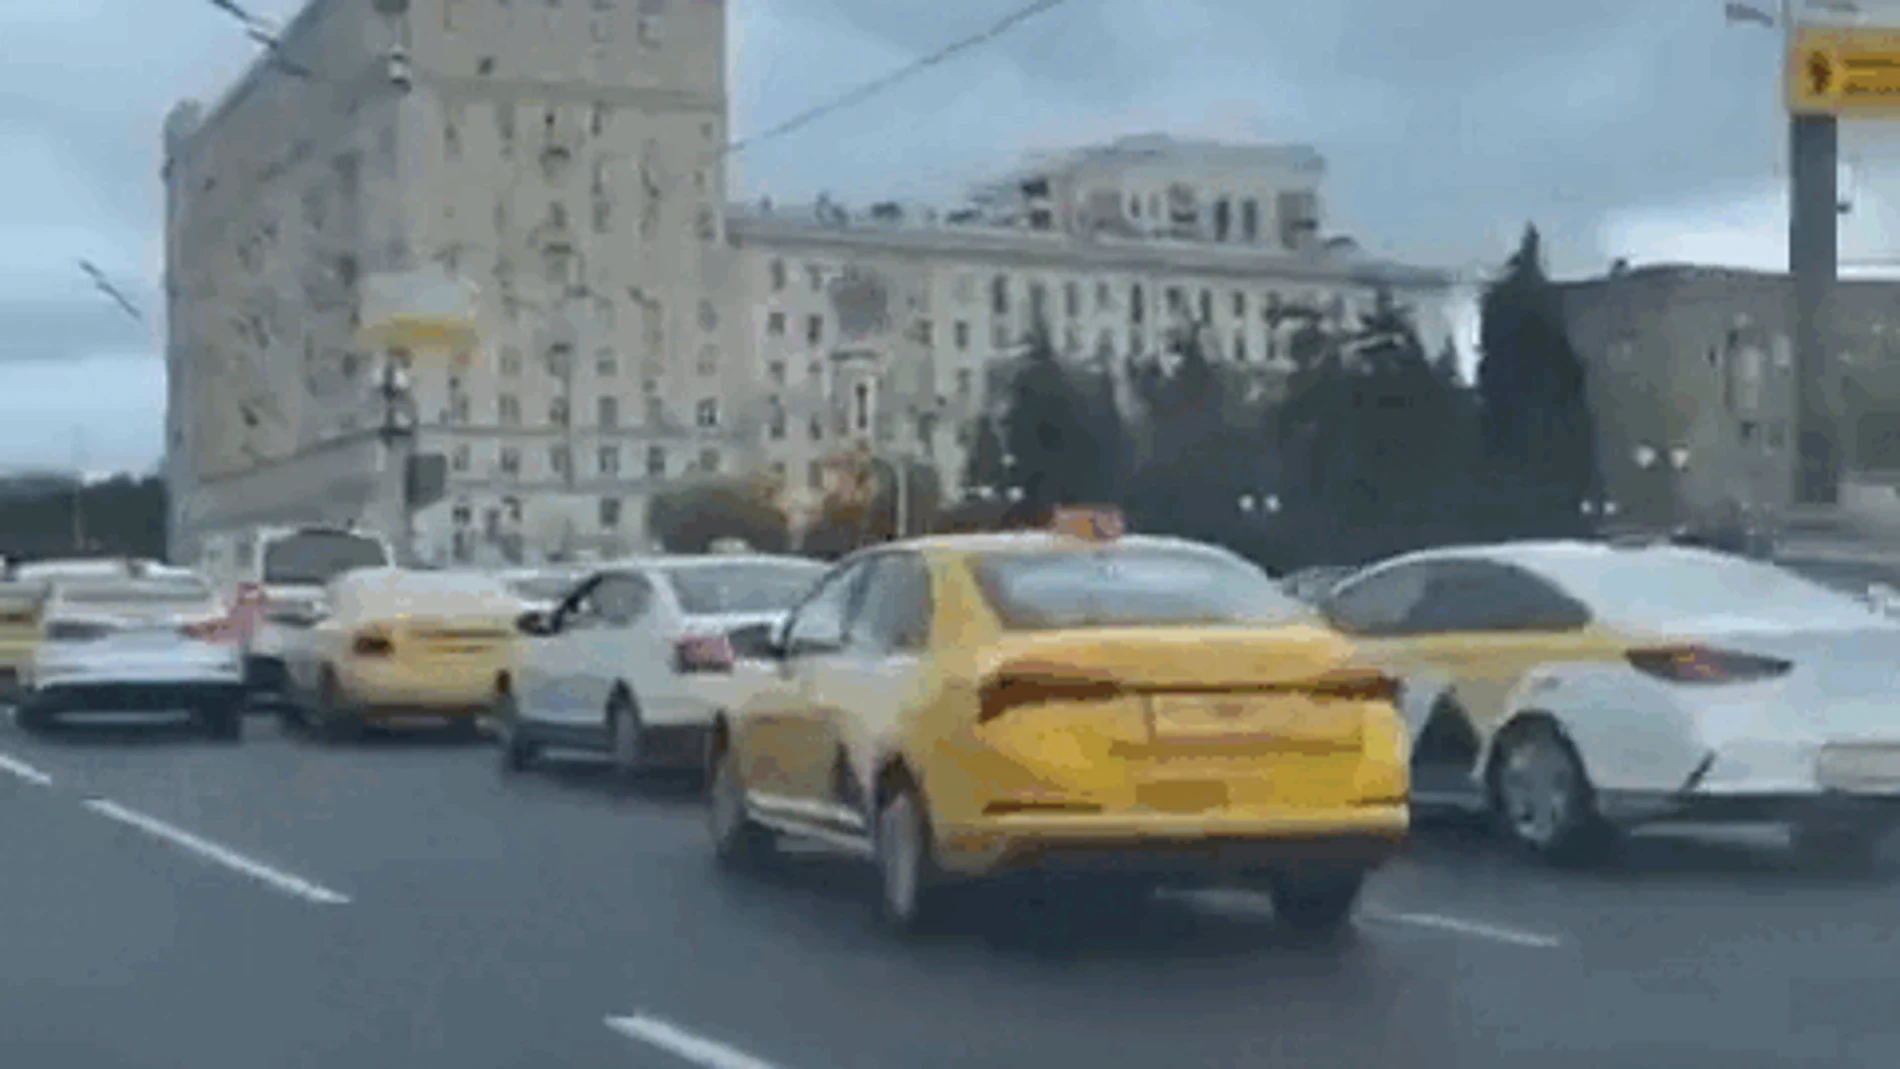 Imagen de los taxis enviados a la misma dirección de Moscú